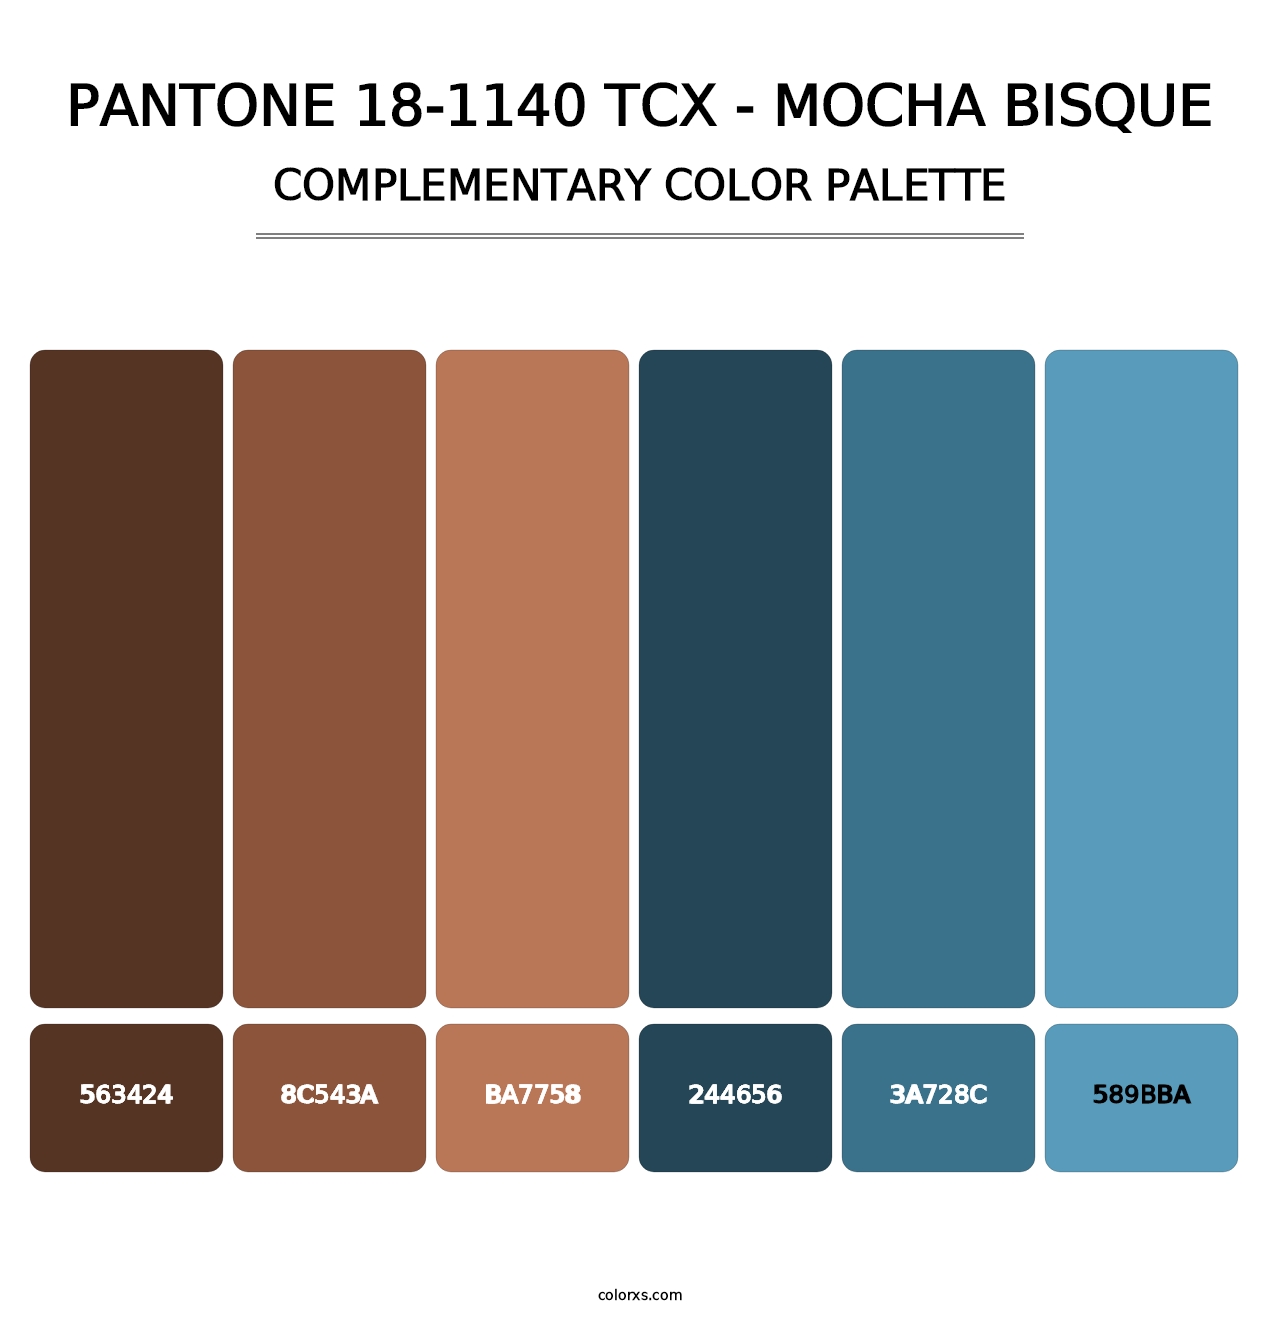 PANTONE 18-1140 TCX - Mocha Bisque - Complementary Color Palette